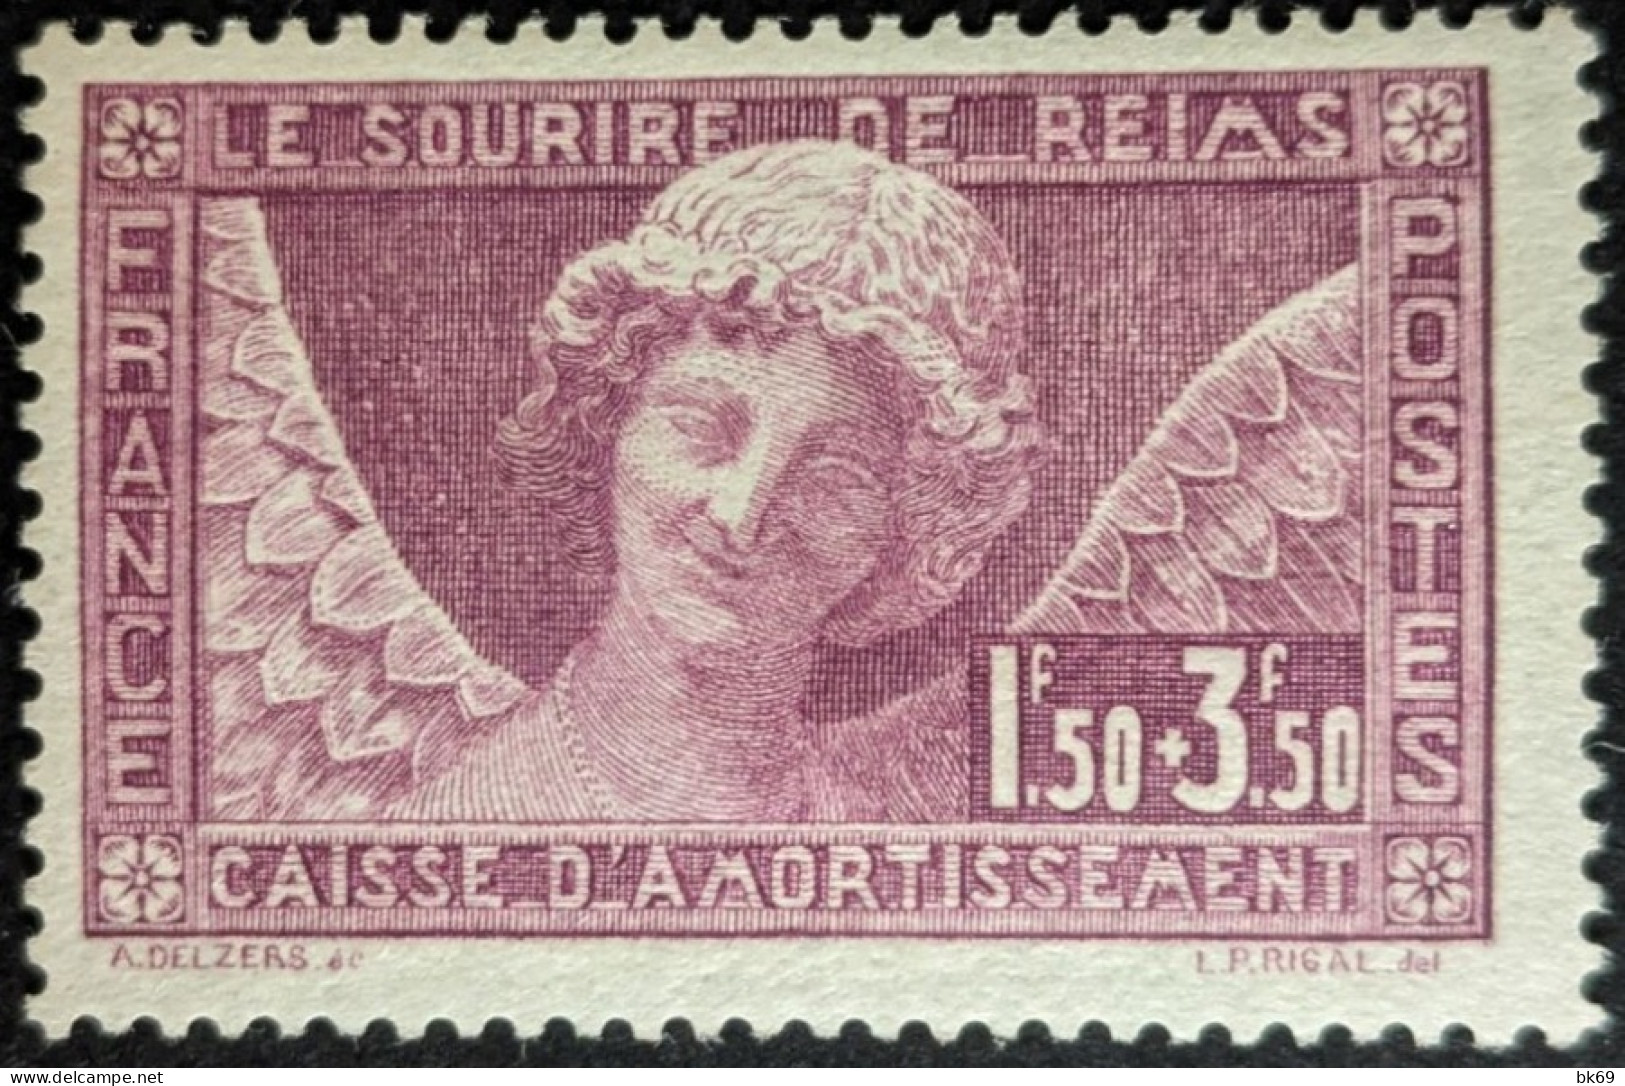 252** Caisse D'Amortissement Le Sourire De Reims COTE 160€ - 1927-31 Caisse D'Amortissement